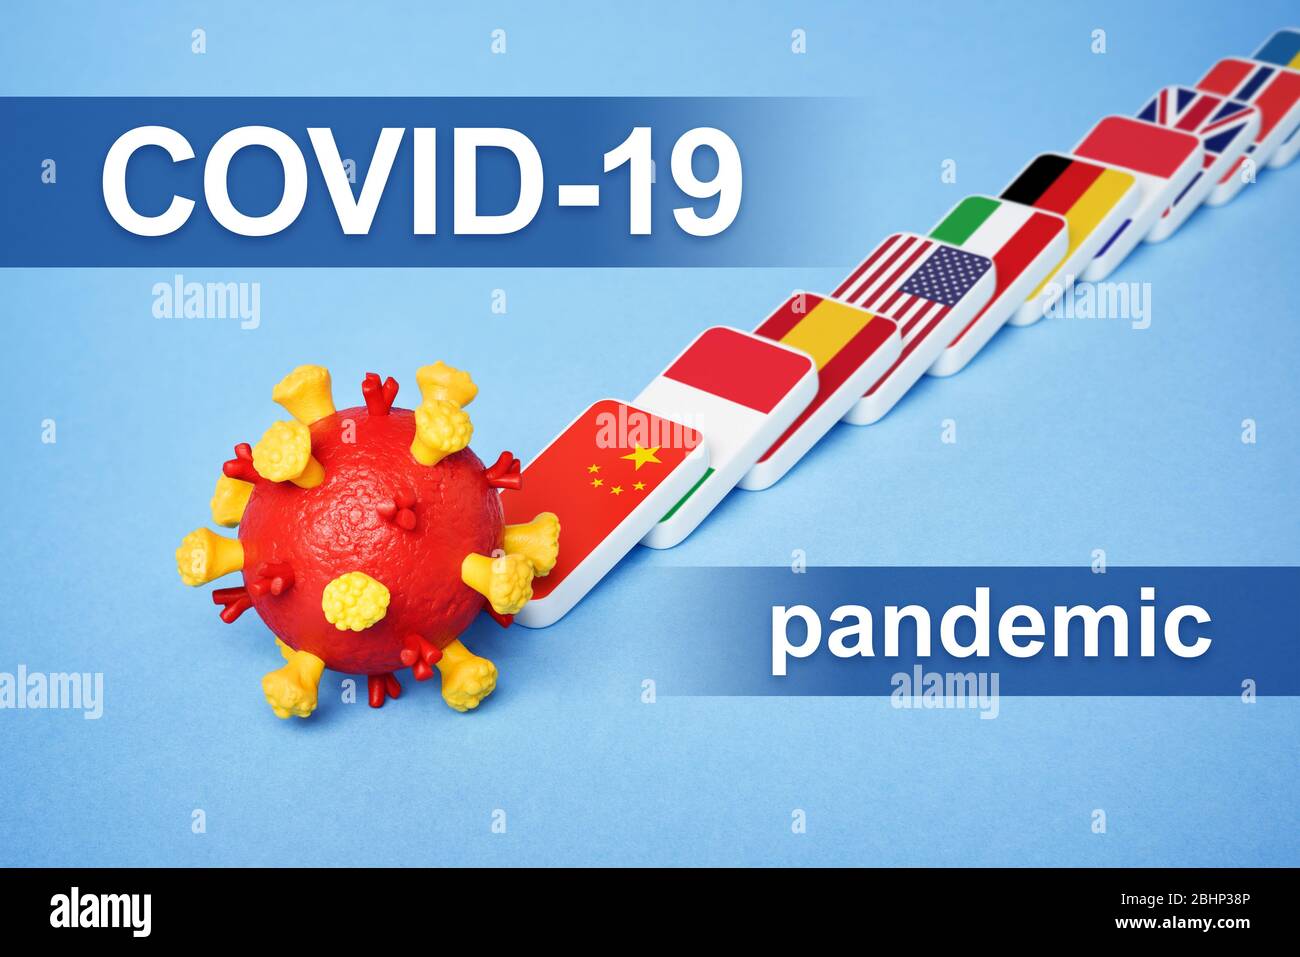 Malattia da coronavirus COVID-19 Pandemic. Domino Effect è una reazione a catena di virus sparsi nel mondo. Sistema sanitario sovraccaricato Foto Stock